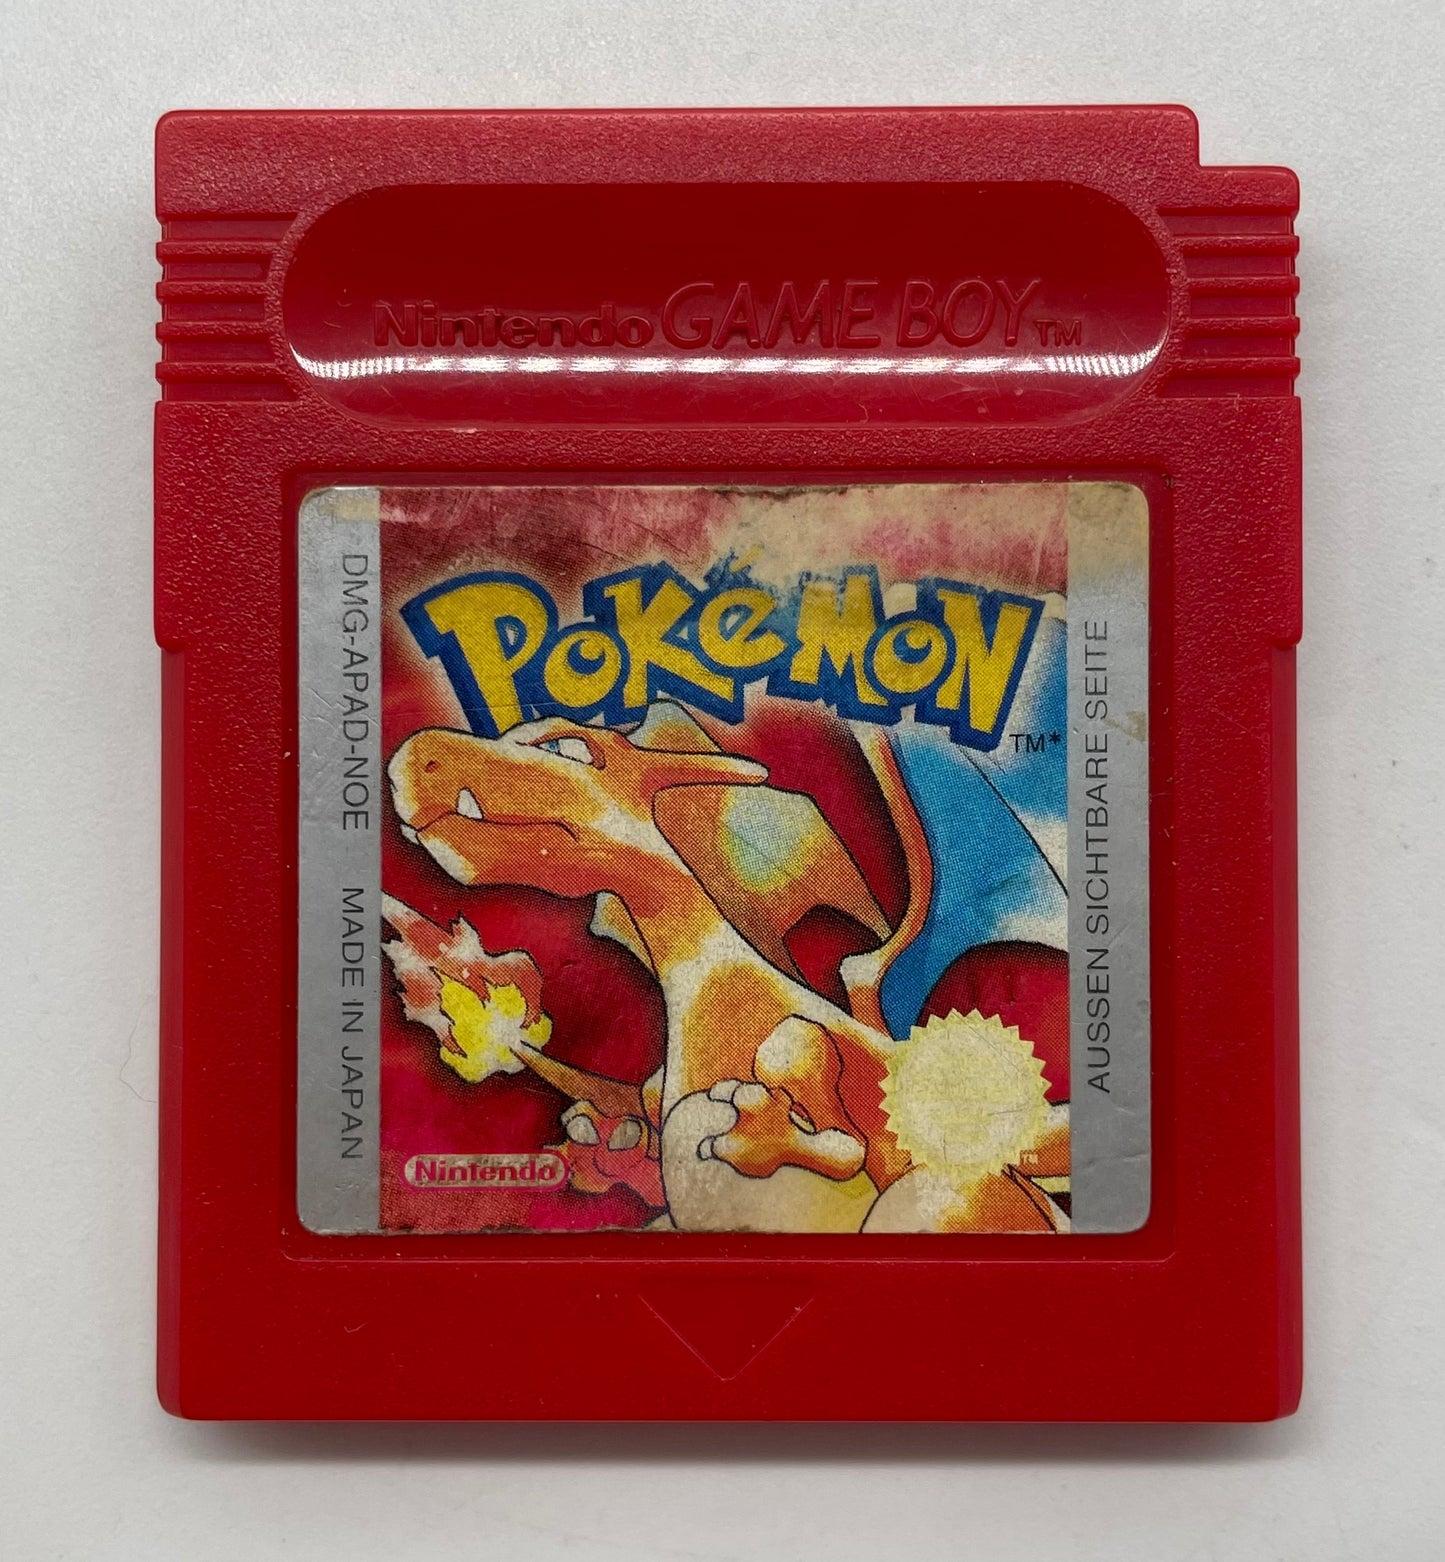 Pokemon rote Edition - DE (Neue Batterie)